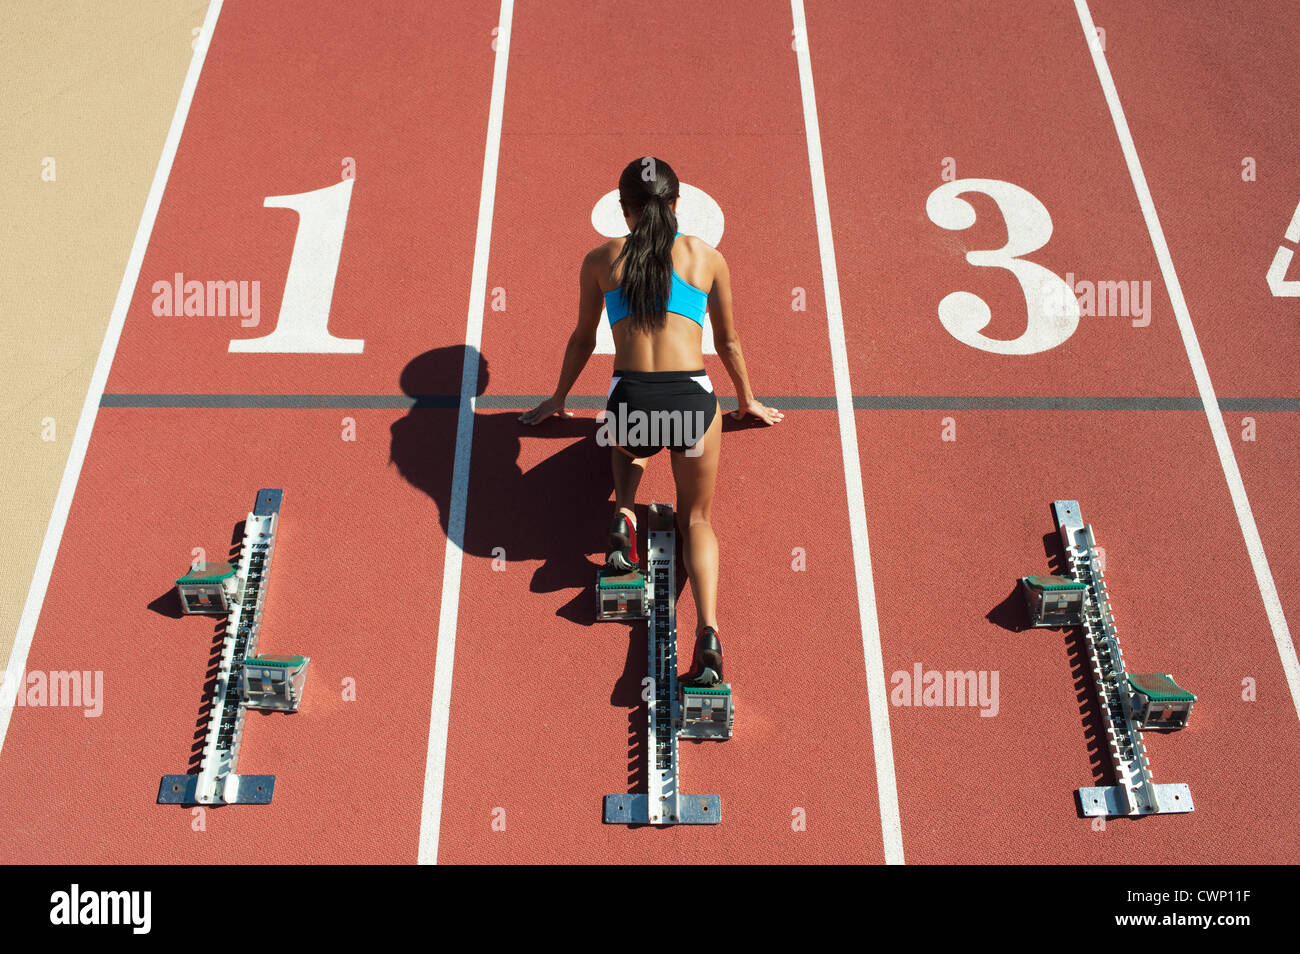 Sportlerin in Startposition auf Laufstrecke, Rückansicht Stockfoto